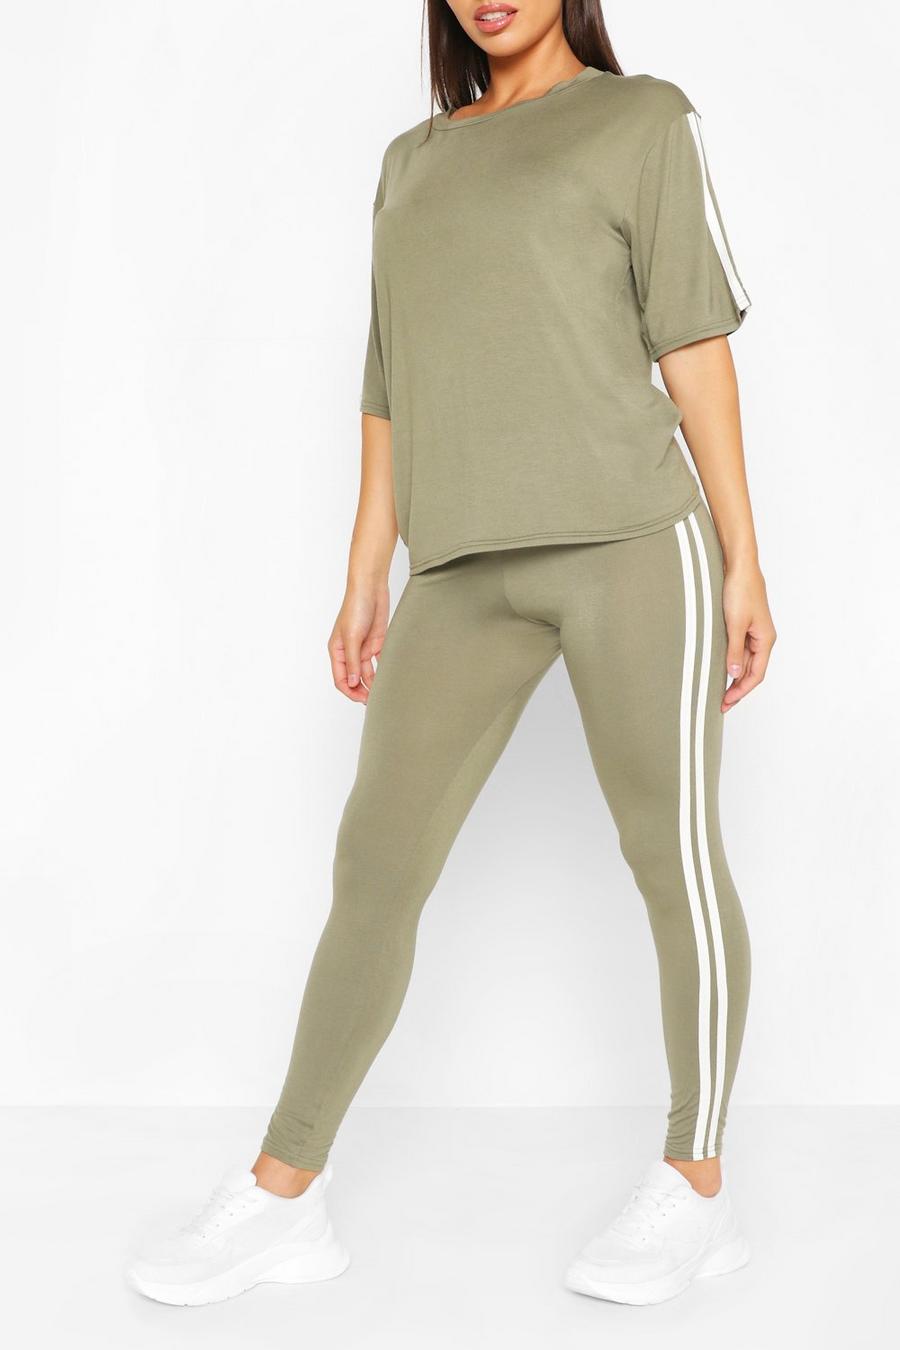 Khaki Short Sleeve Side Stripe Loungewear Set